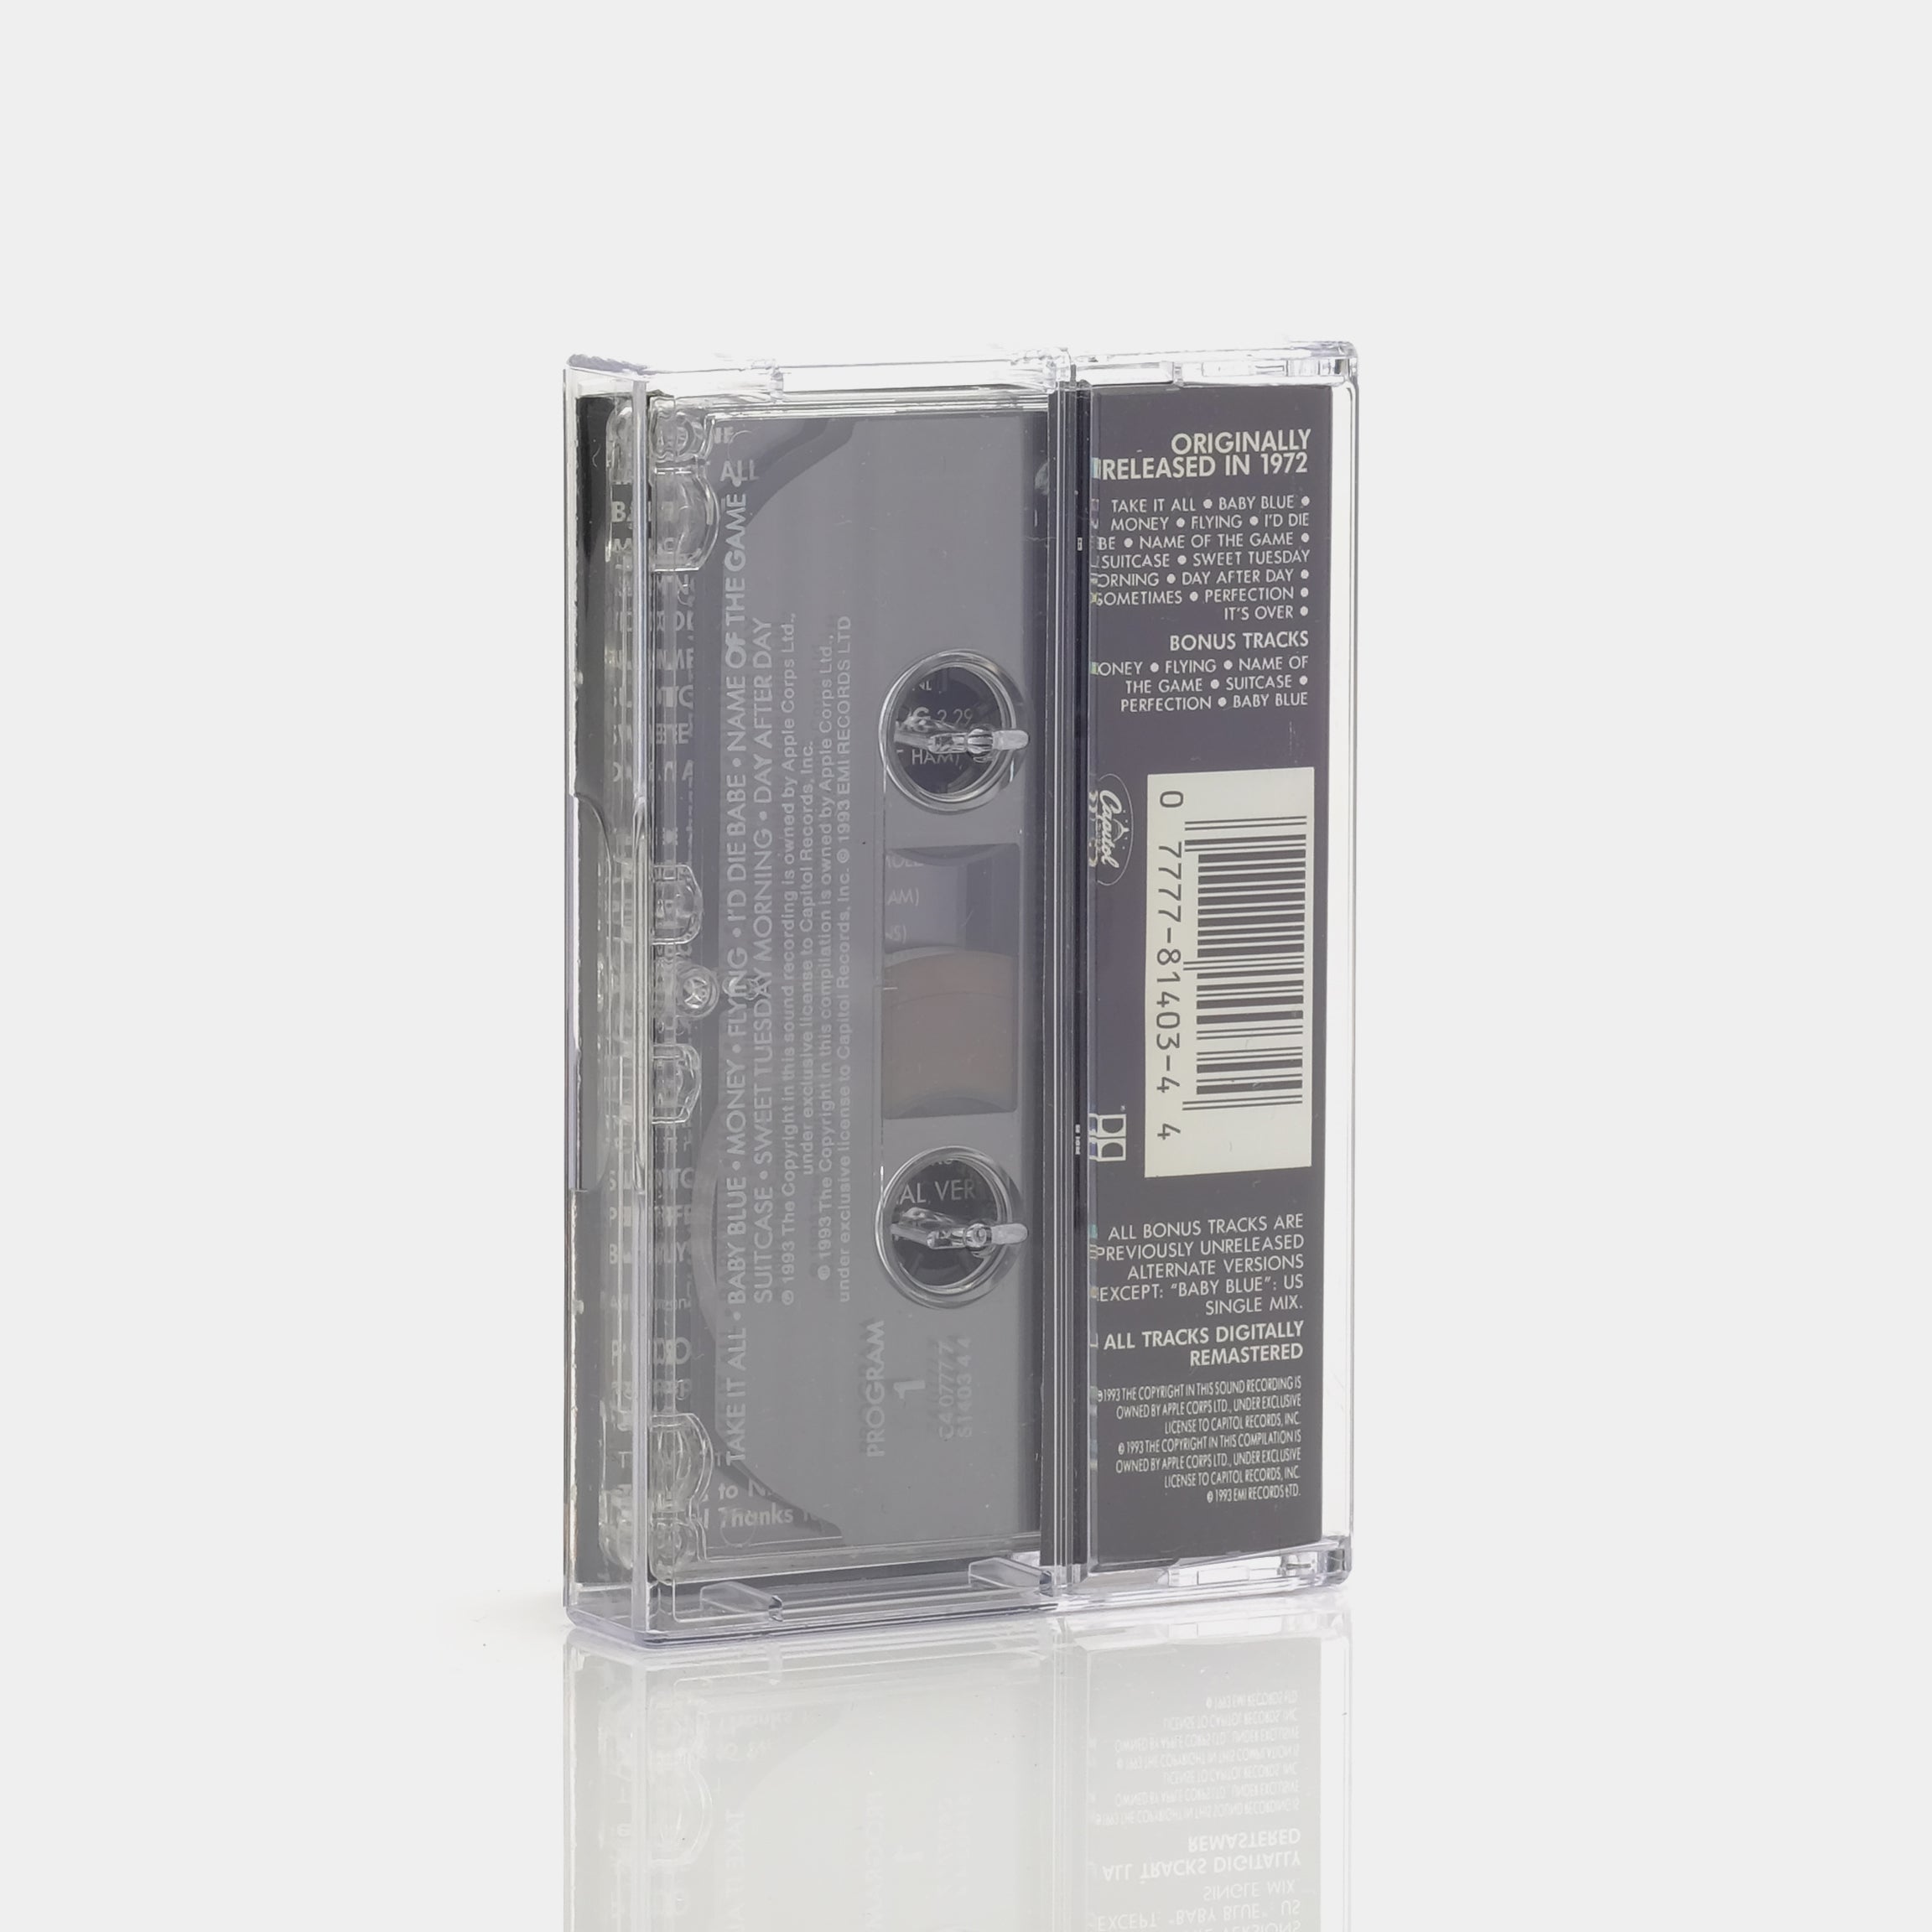 Badfinger - Straight Up Cassette Tape